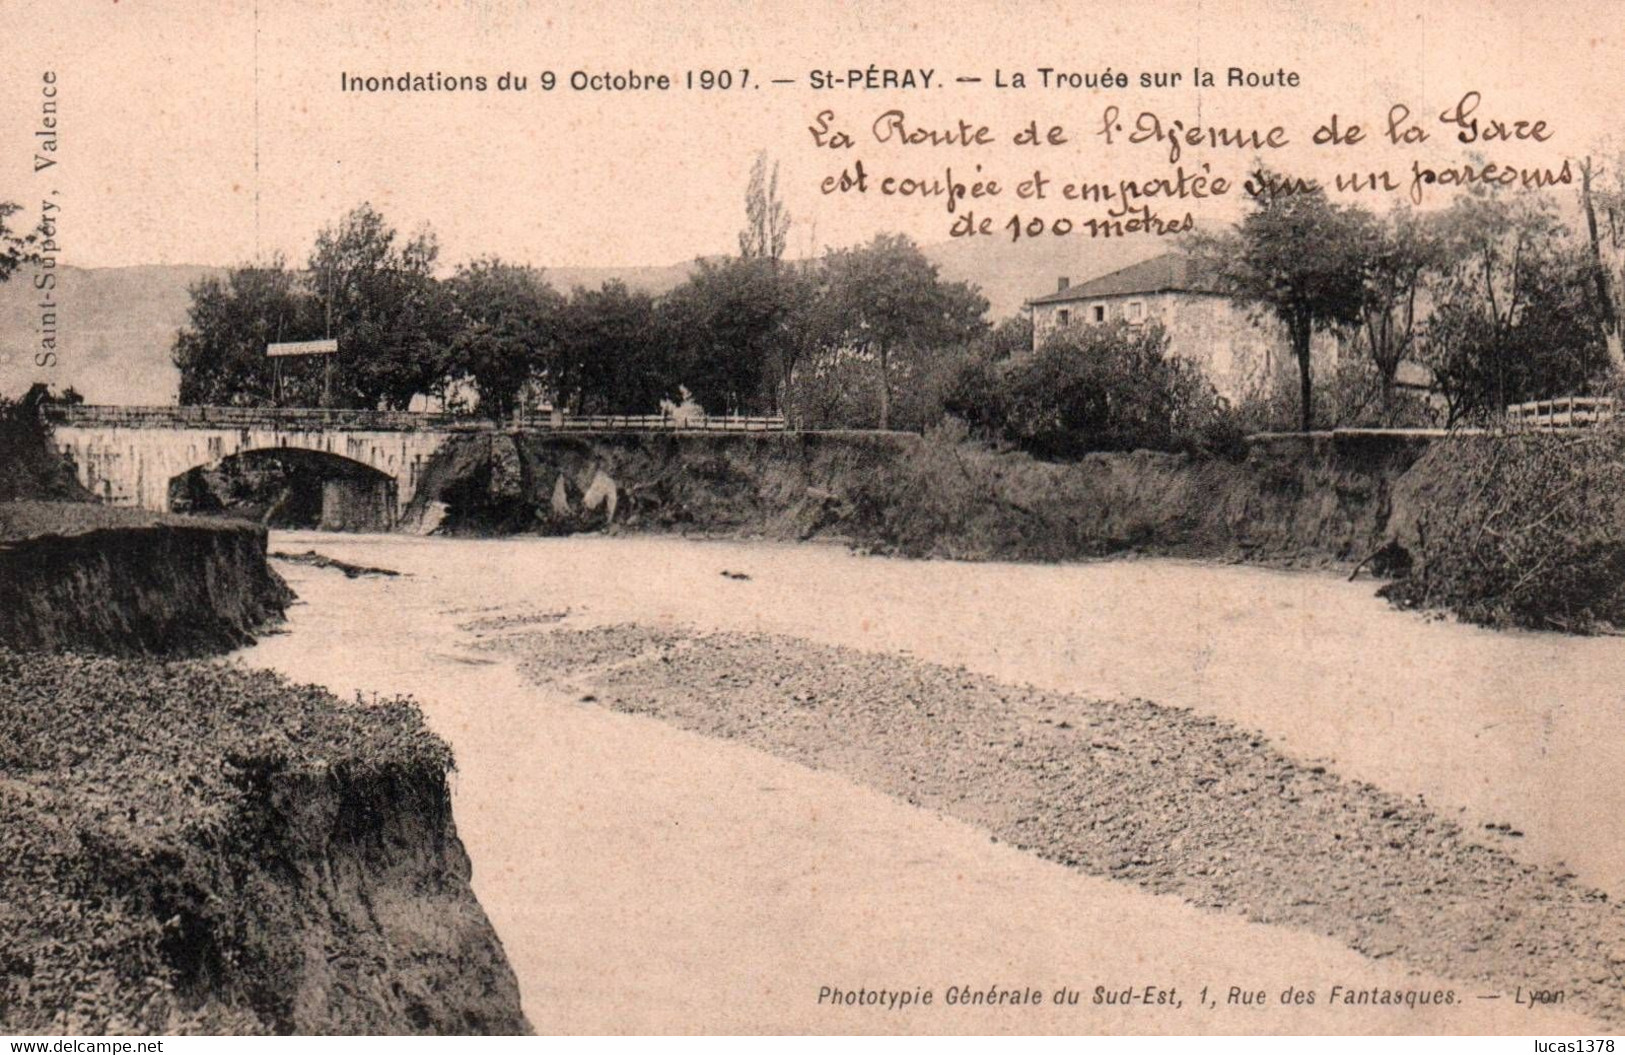 07 /SAINT PERAY / INONDATIONS 1907 / LA ROUTE DE VALENCE / LA TROUEE SUR LA ROUTE - Saint Péray